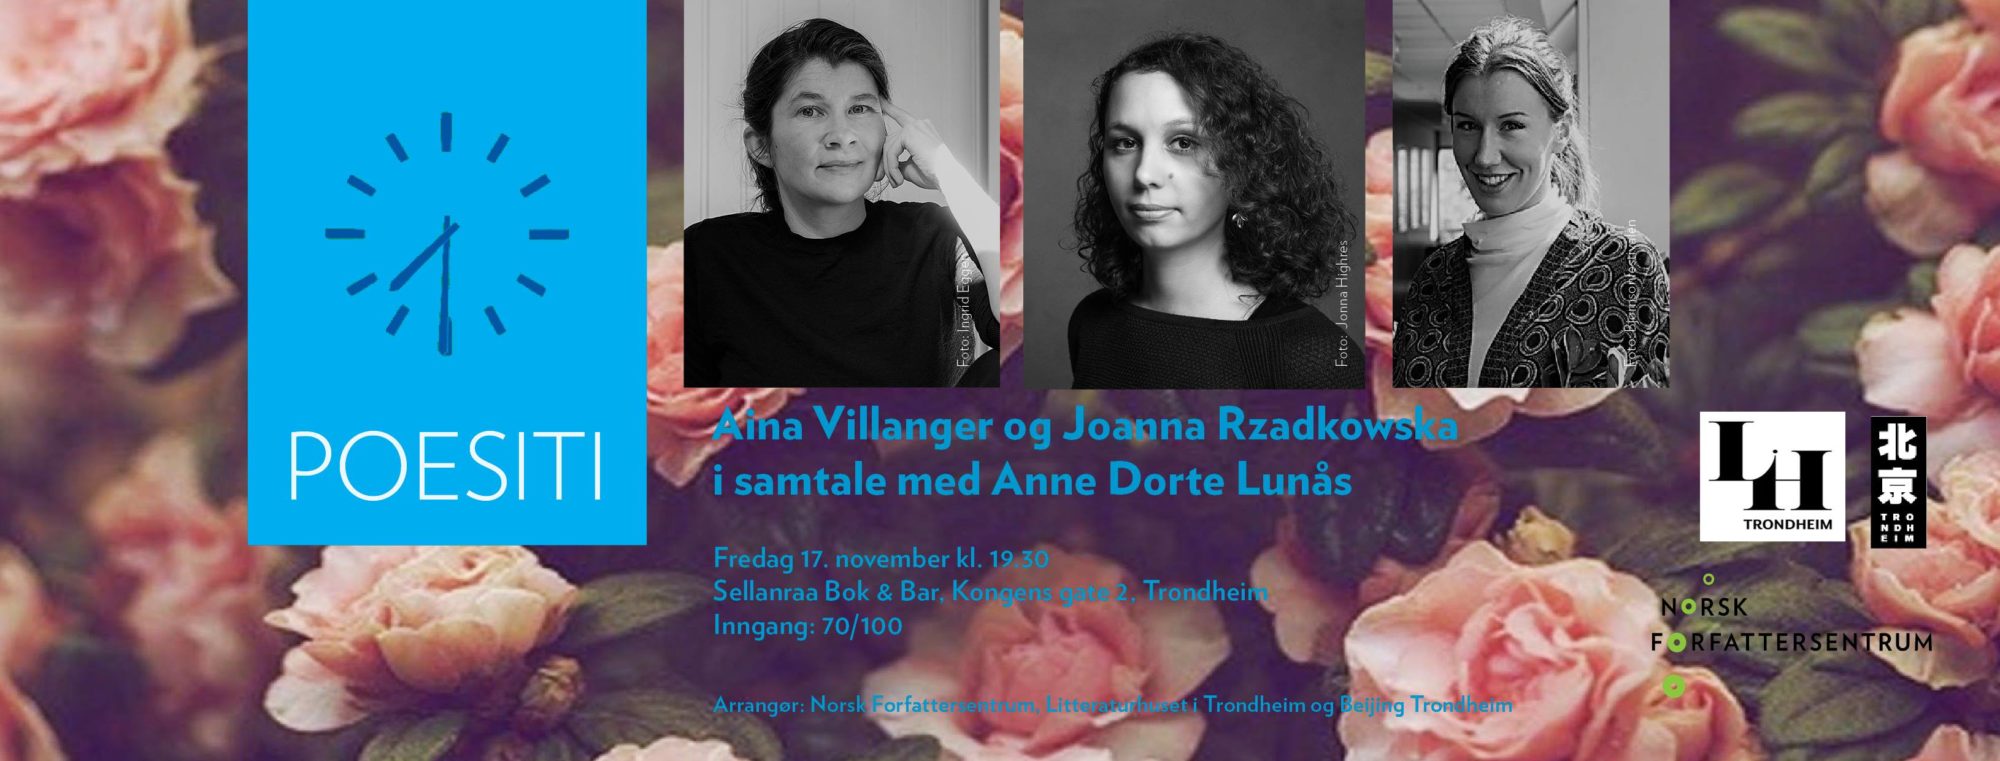 Poesiti med Aina Villanger og Joanna Rzadkowska